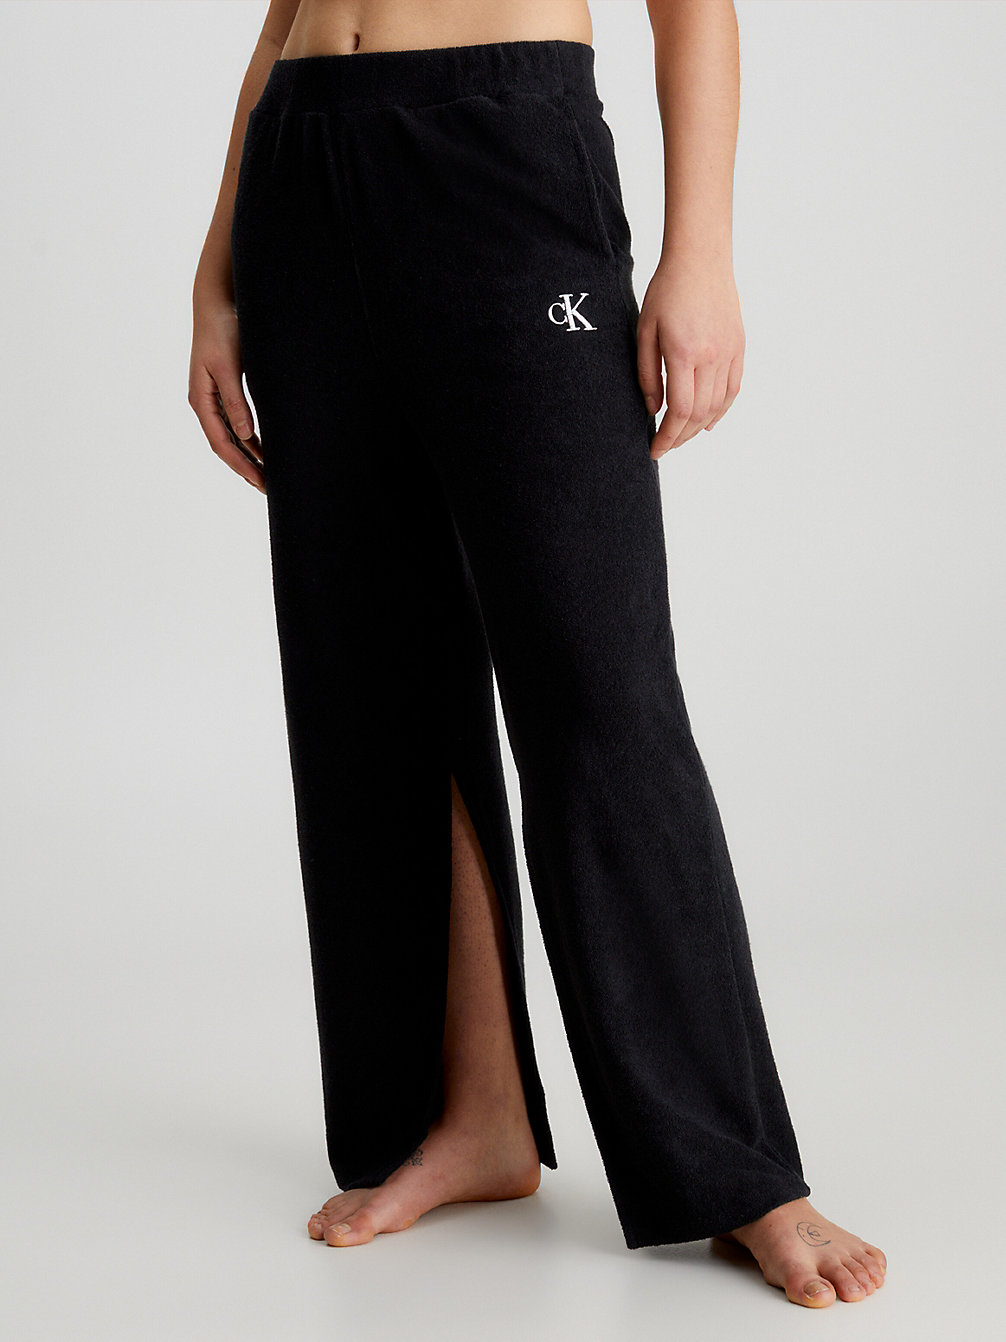 PVH BLACK > Spodnie Plażowe Frotte - CK Monogram > undefined Kobiety - Calvin Klein